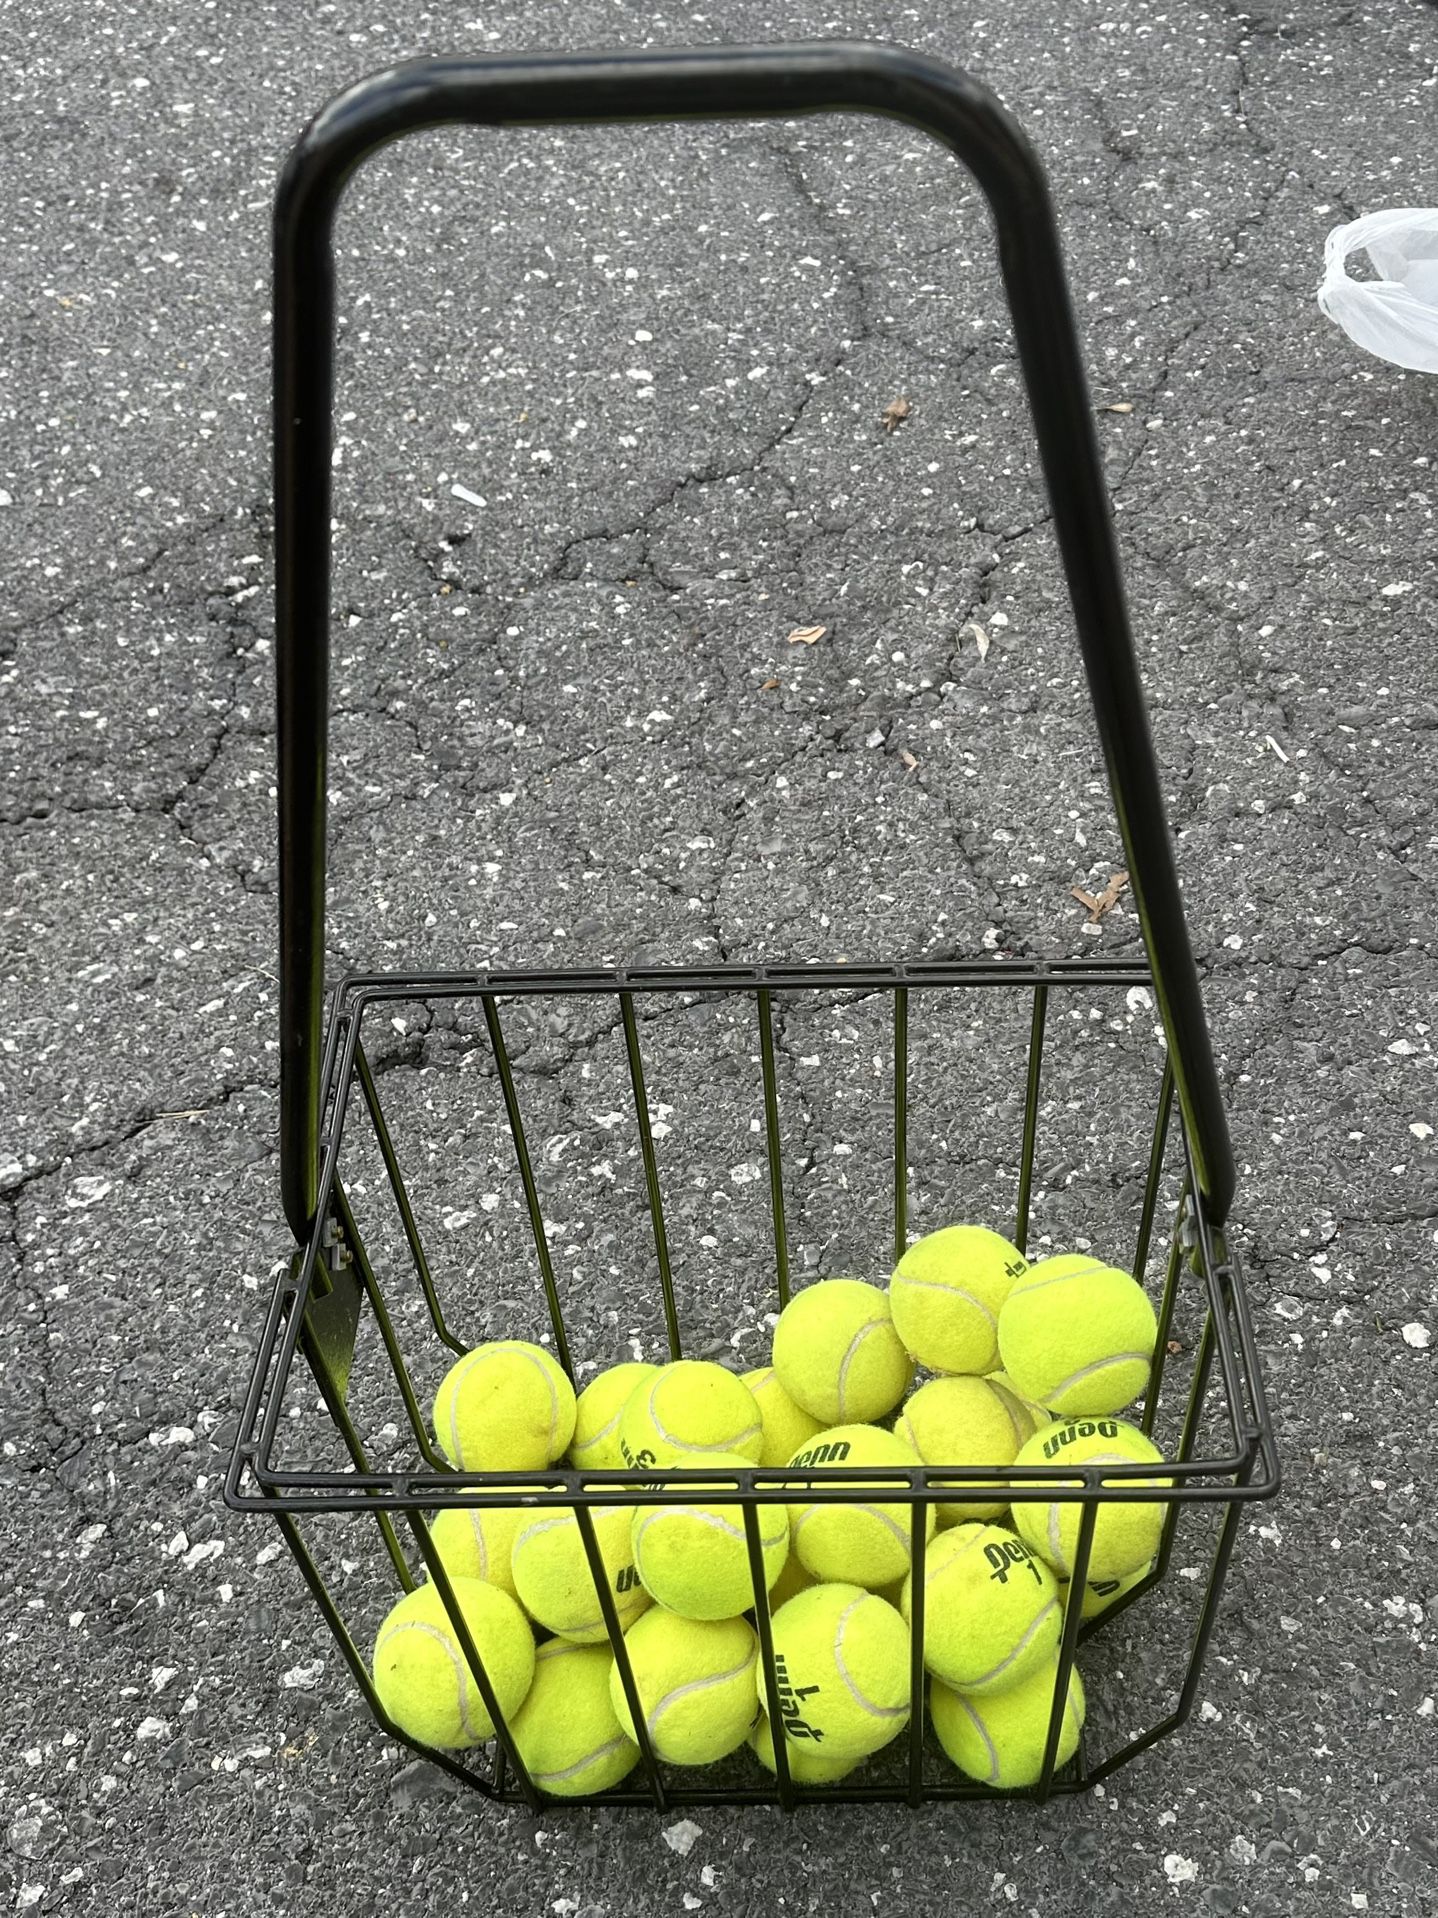 Tennis Ball Hopper With Balls